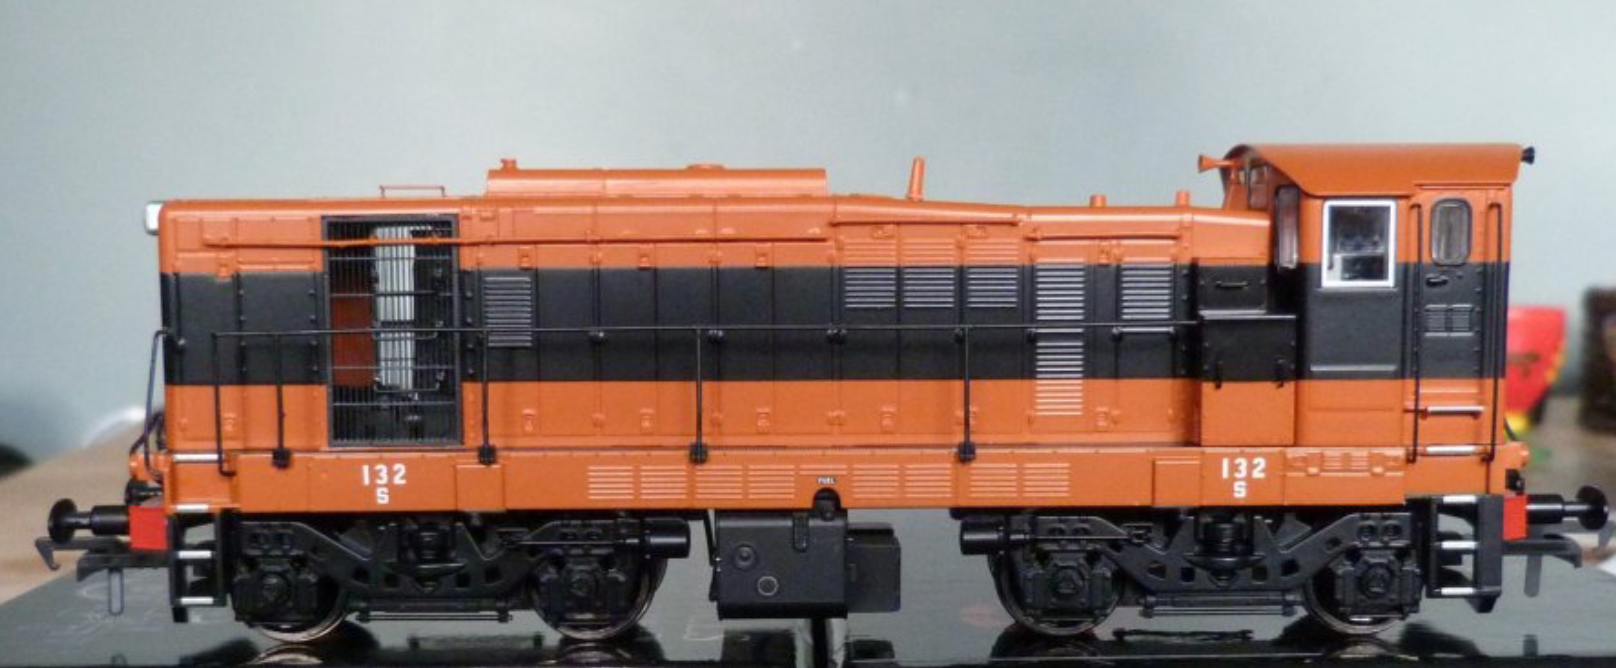 132 - Class 121 Locomotive - Supertrain